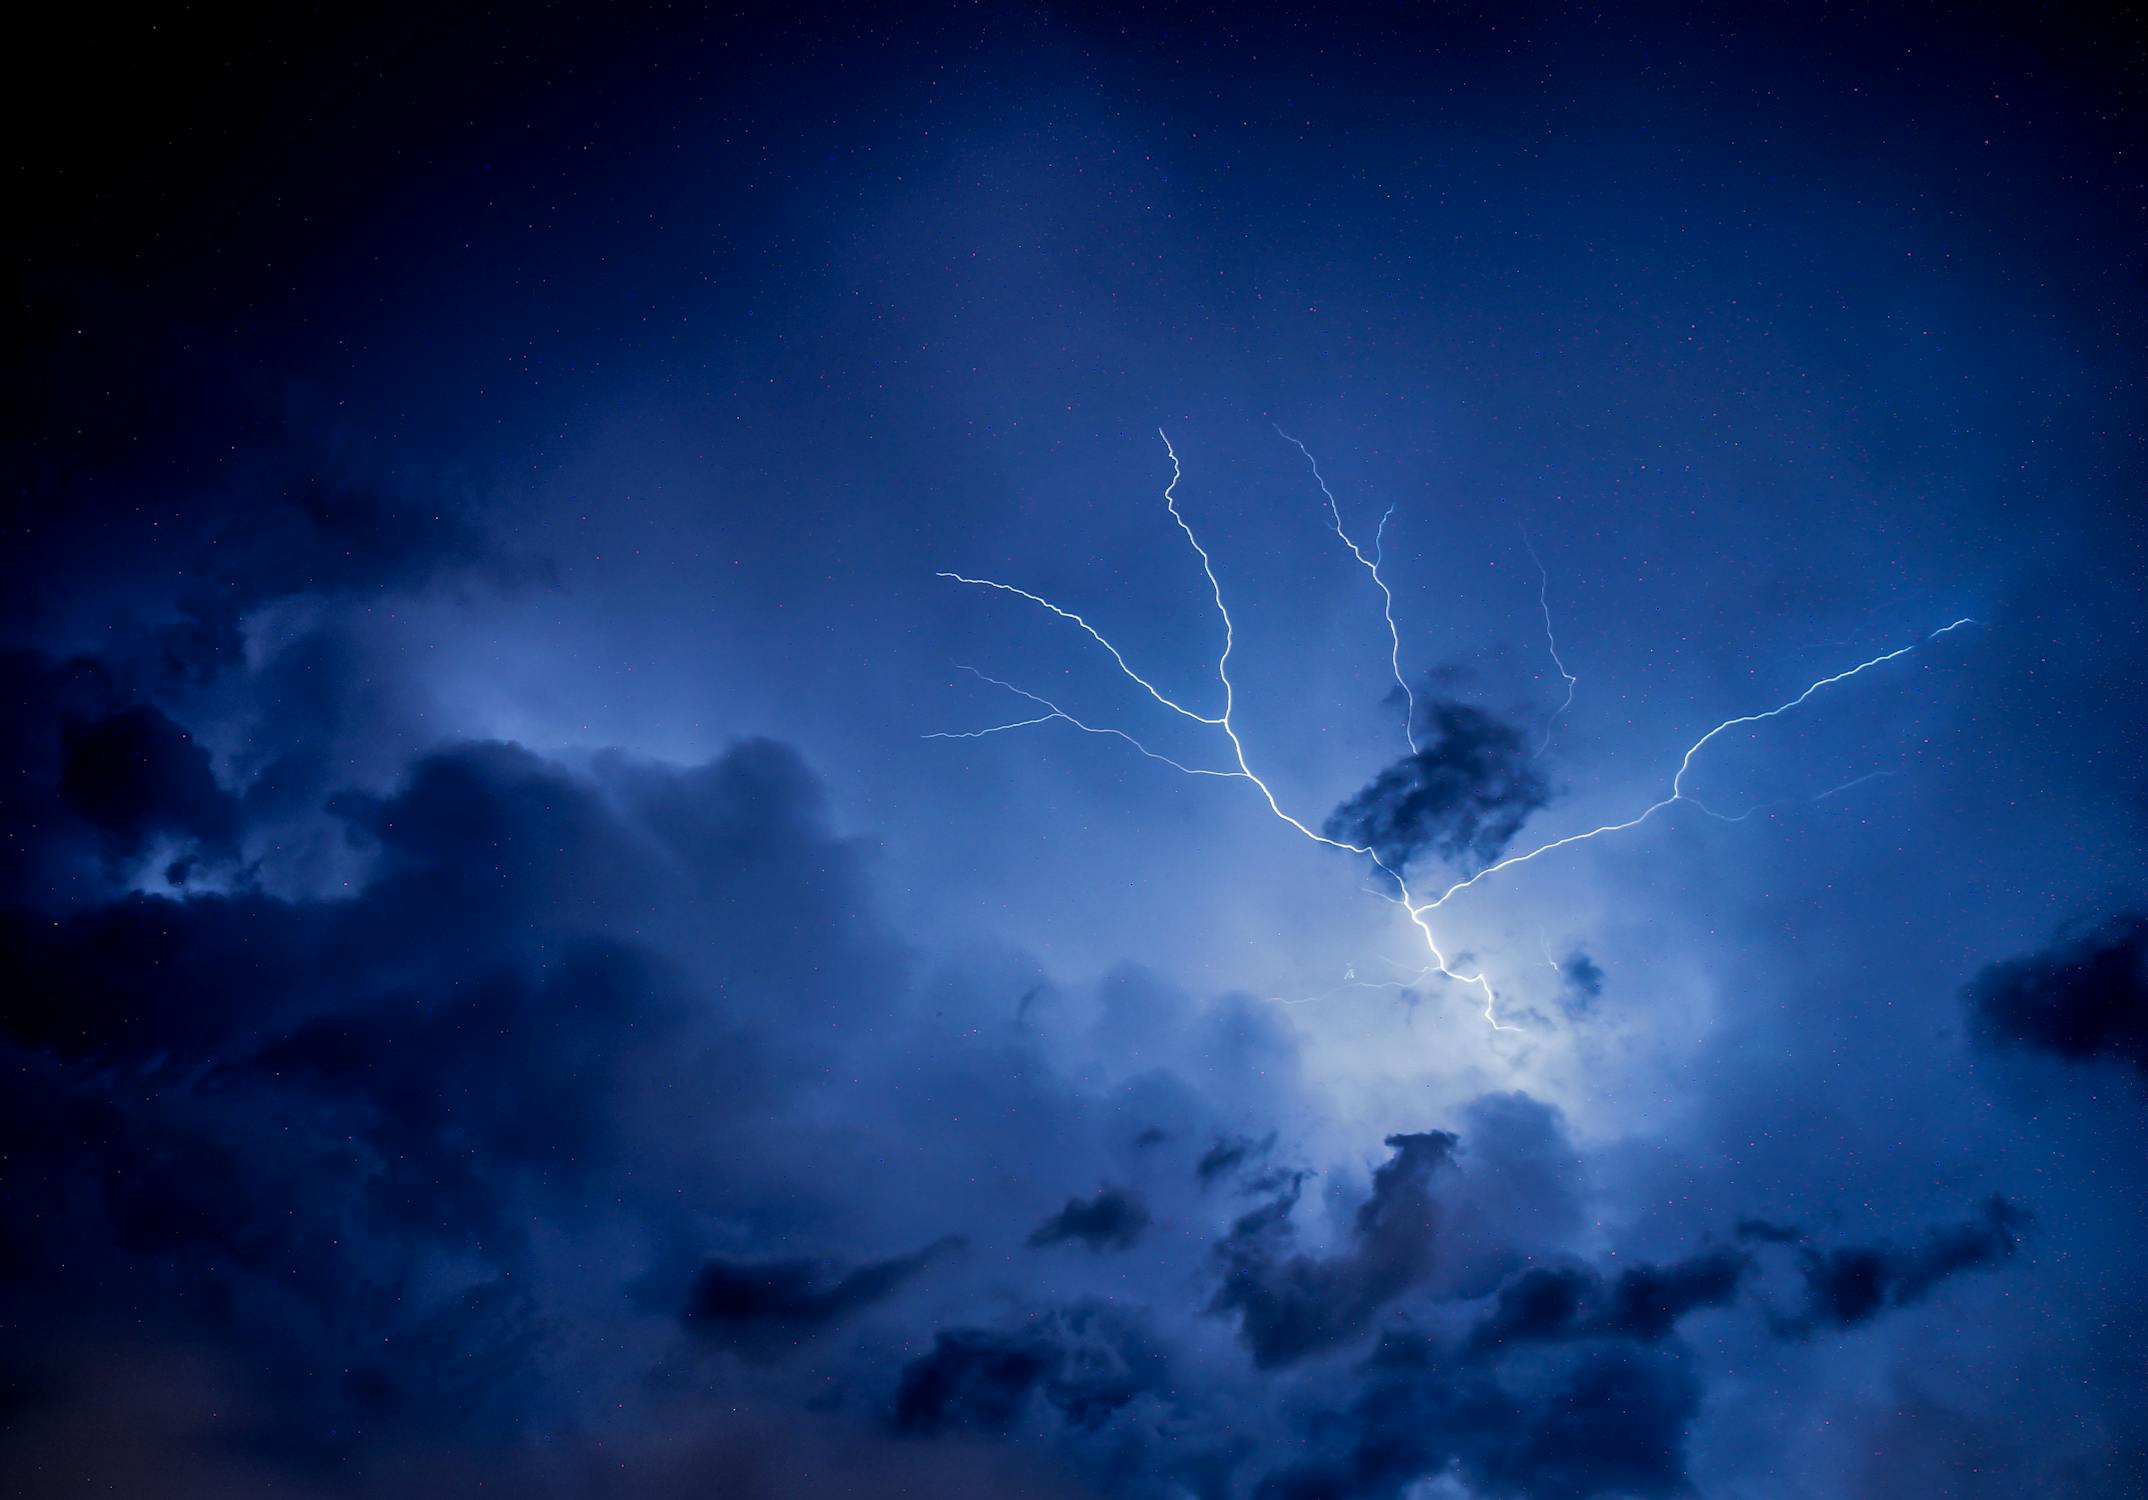 Thunder storm Photo by Rodrigo Souza from Pexels: https://www.pexels.com/photo/photo-of-thunderstorm-2531709/